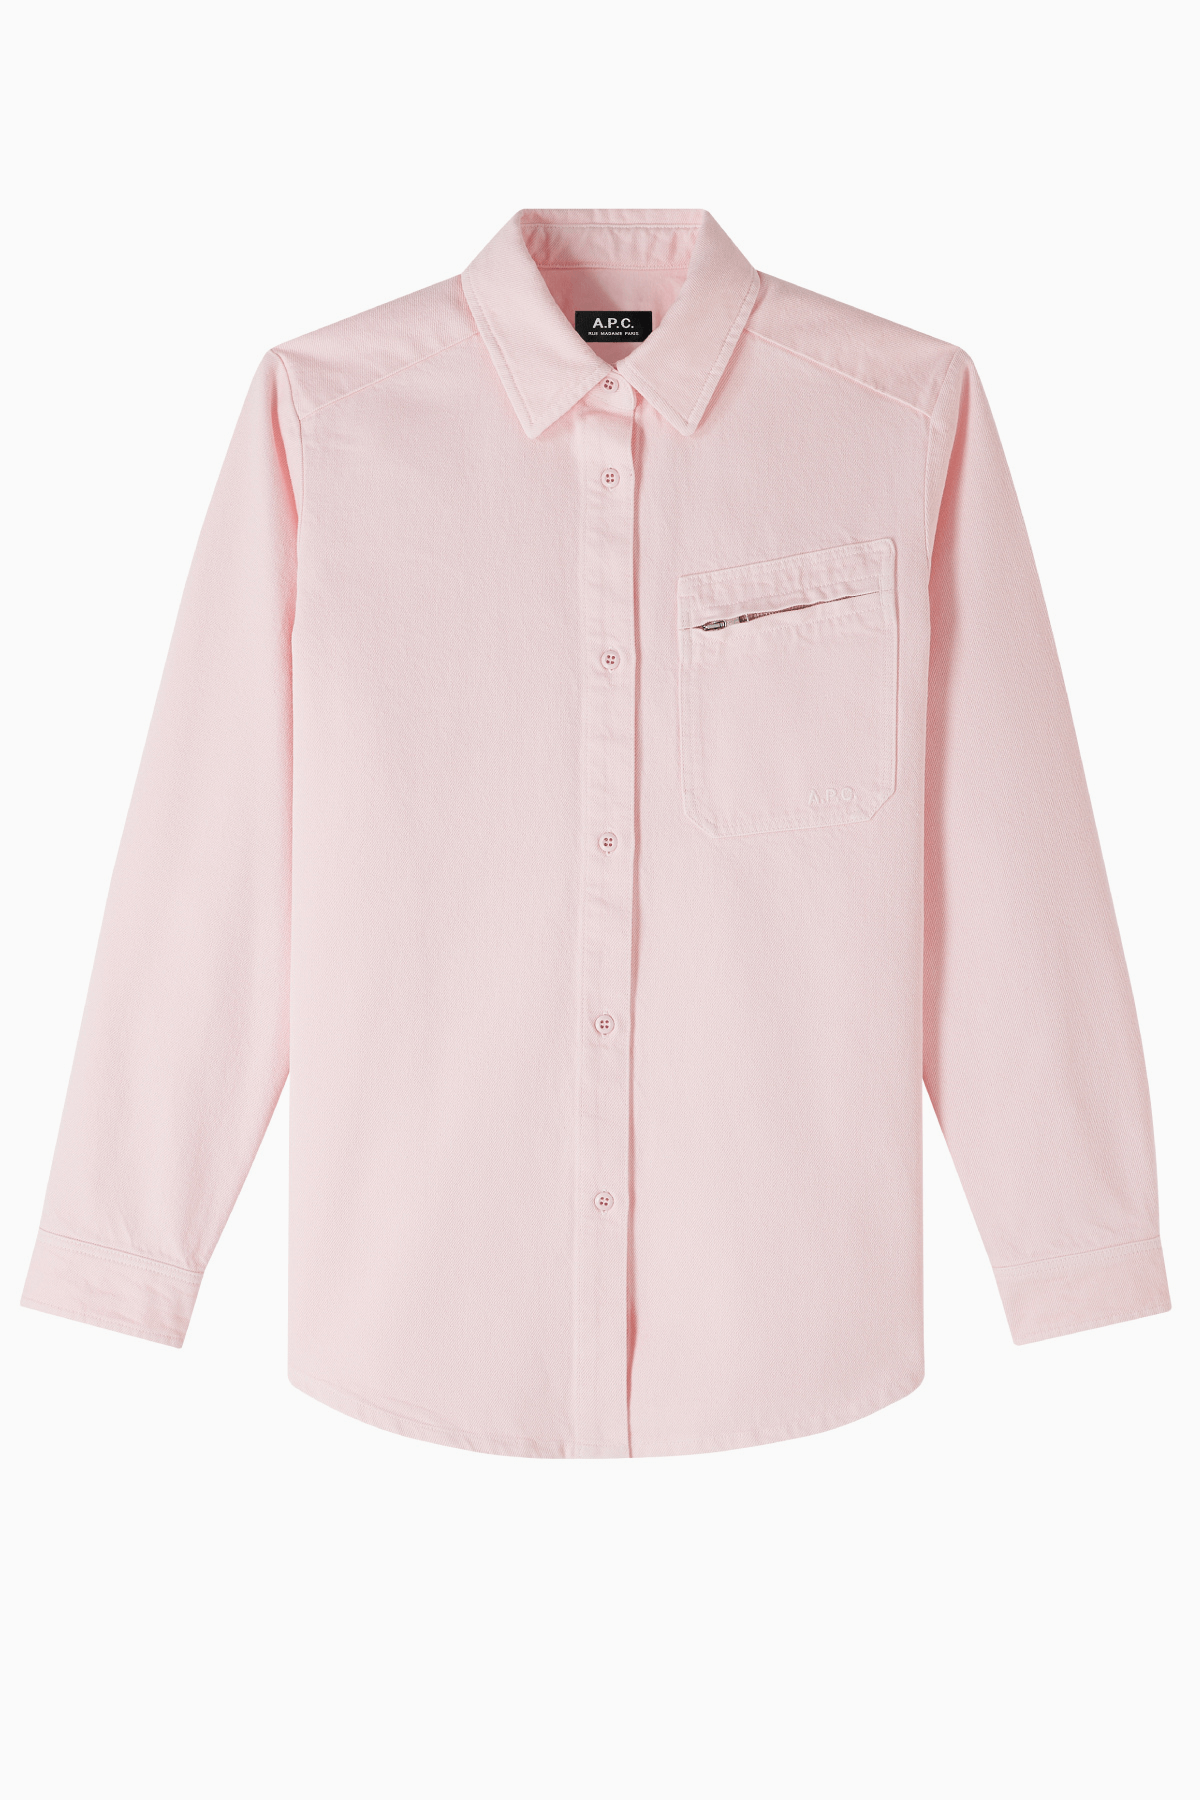 A.P.C. Tina Organic Cotton Denim Shirt - Pale Pink